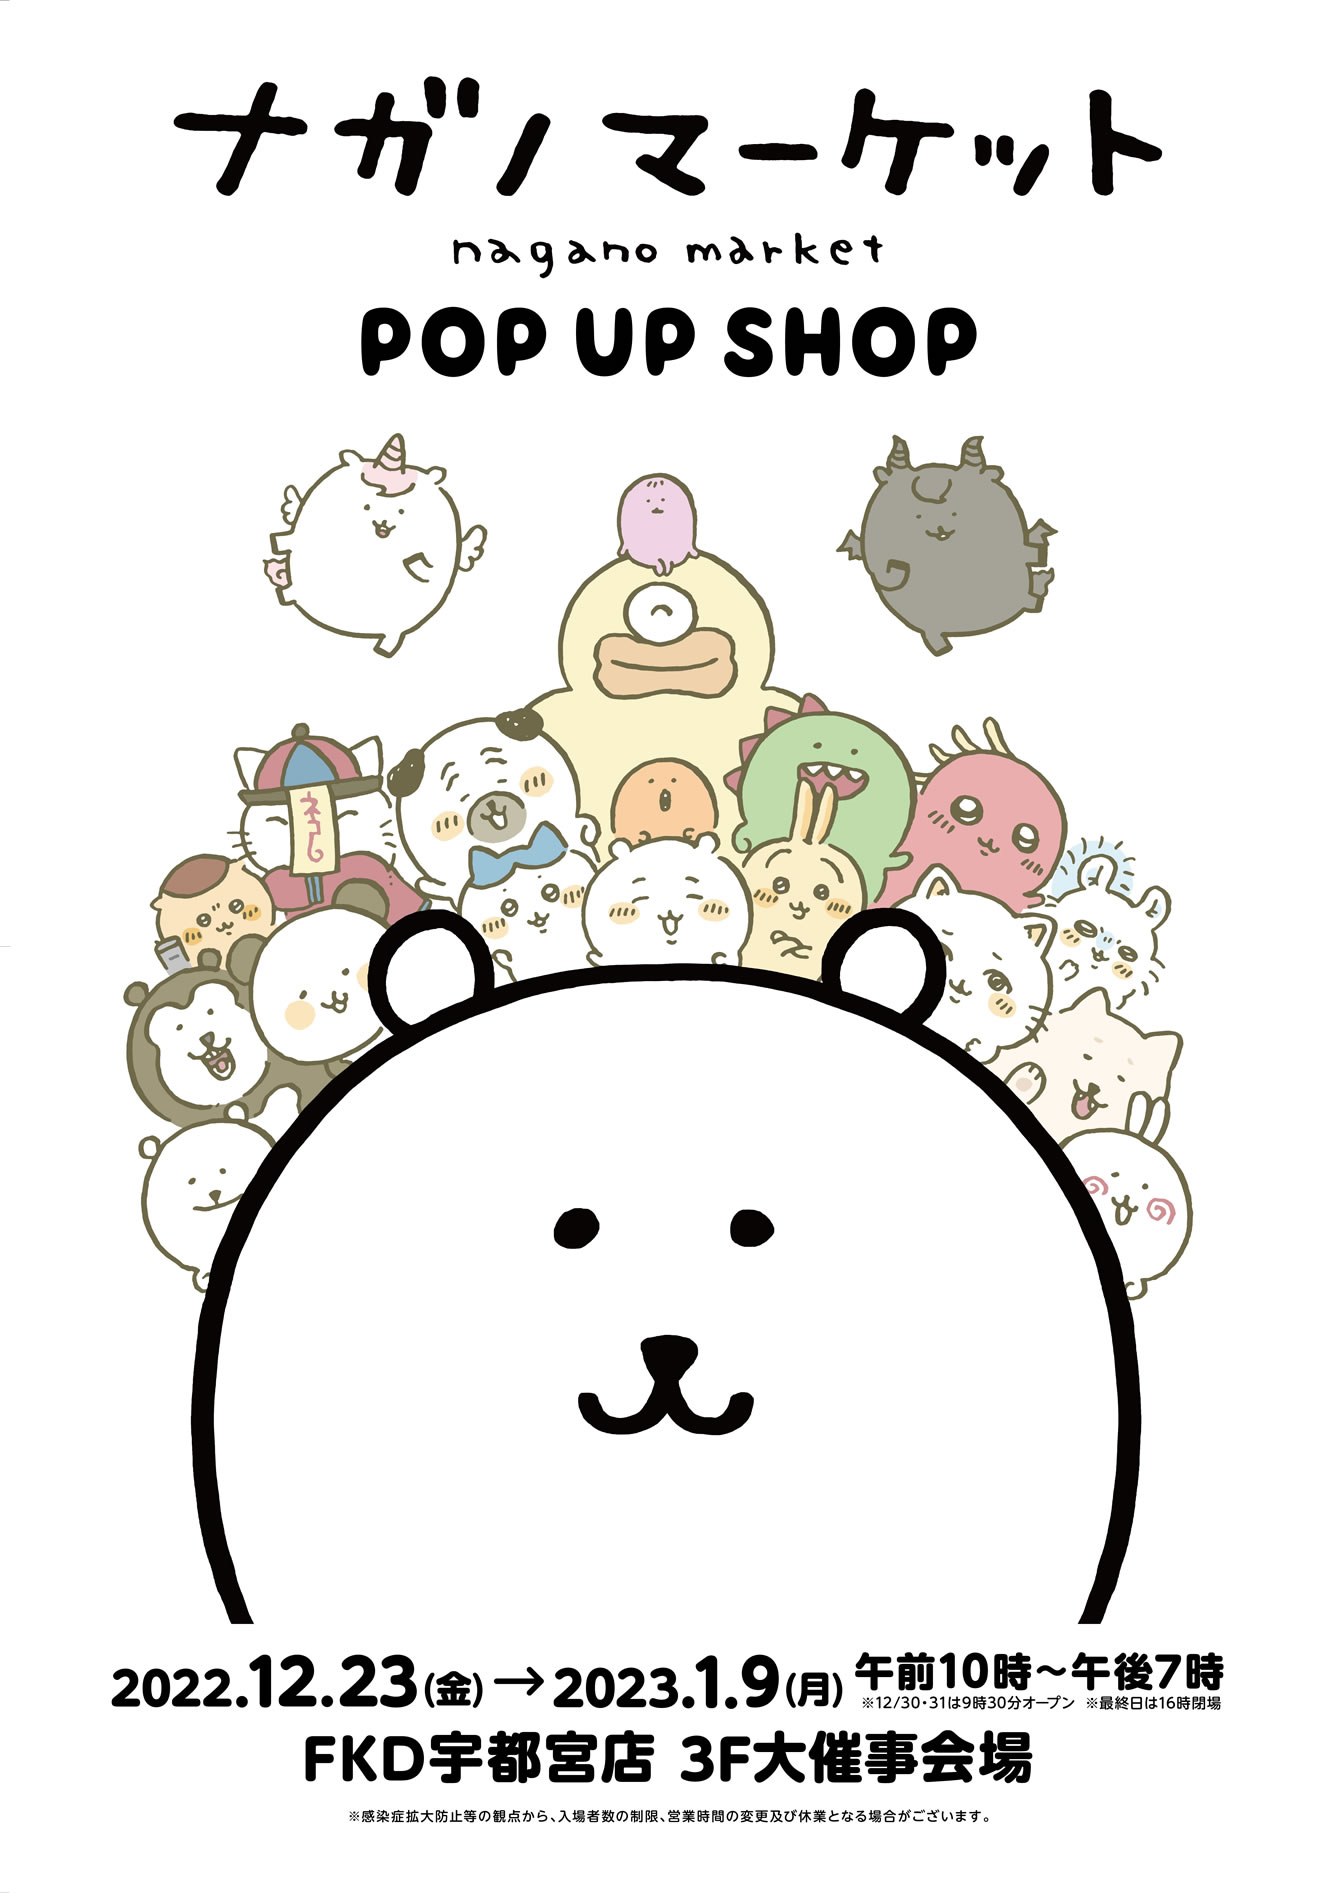 ナガノマーケット POP UP SHOP 宇都宮(2022/12/23(金)～2023/1/9(月祝))